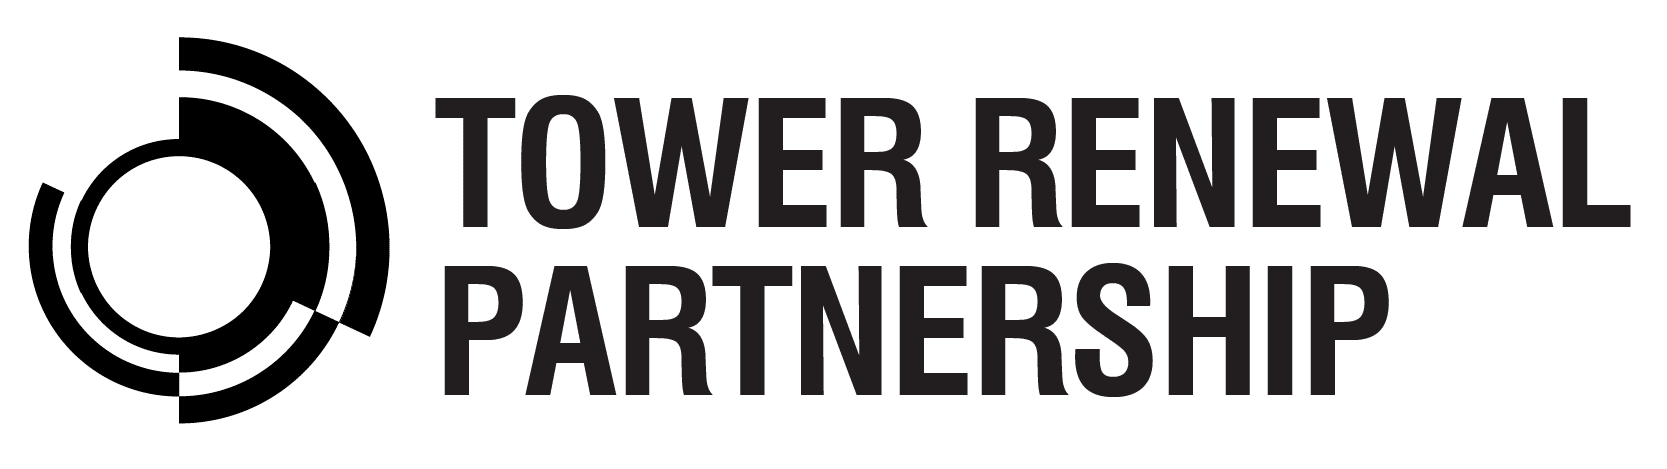 Tower Renewal Partnership Logo